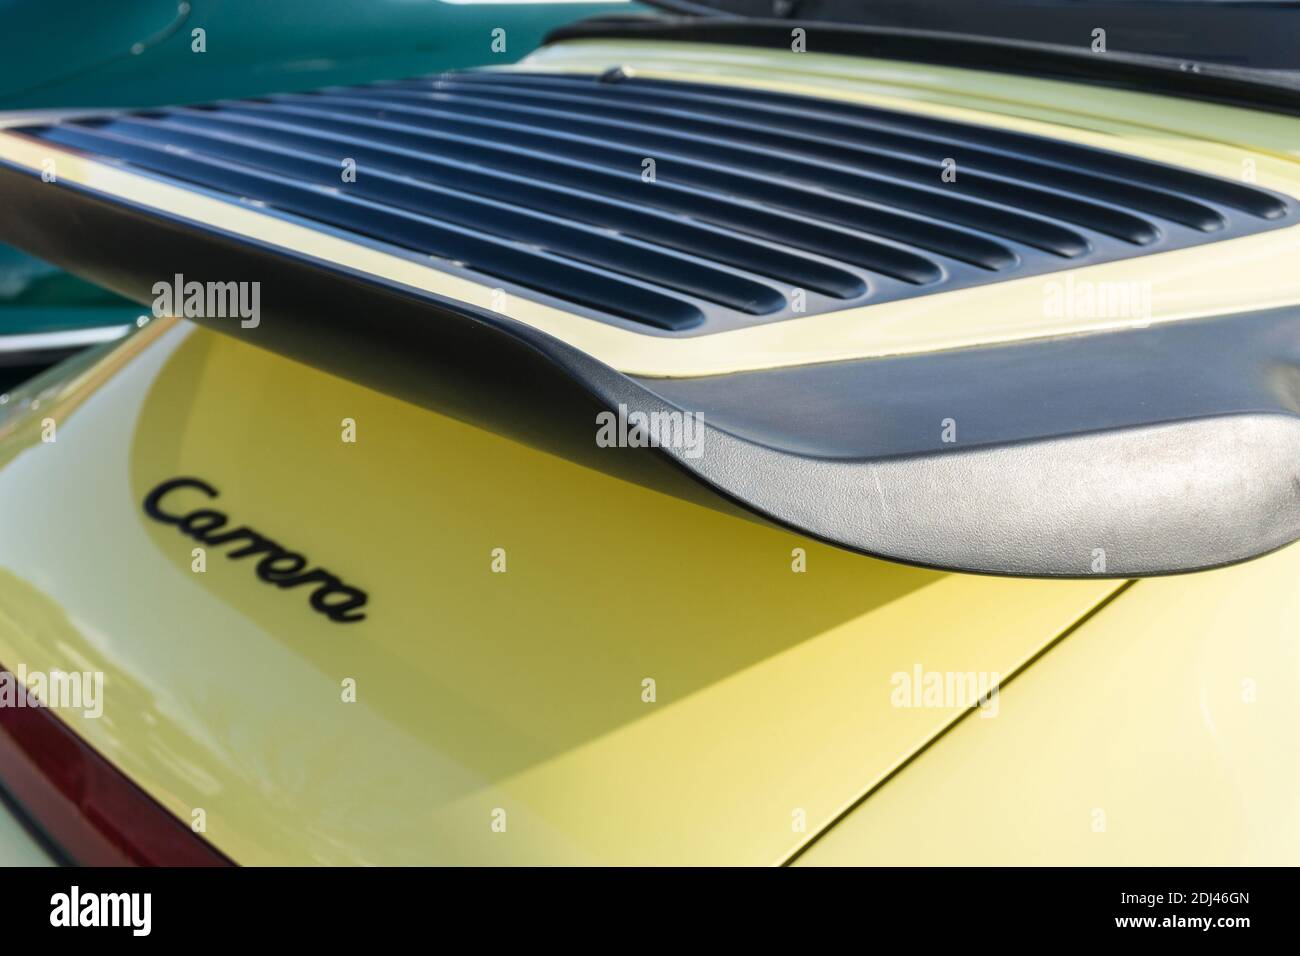 L'aile et la grille du capot moteur arrière d'une voiture de sport Porsche 911 3.2 Carrera jaune des années 80 dehors sous le soleil. Banque D'Images